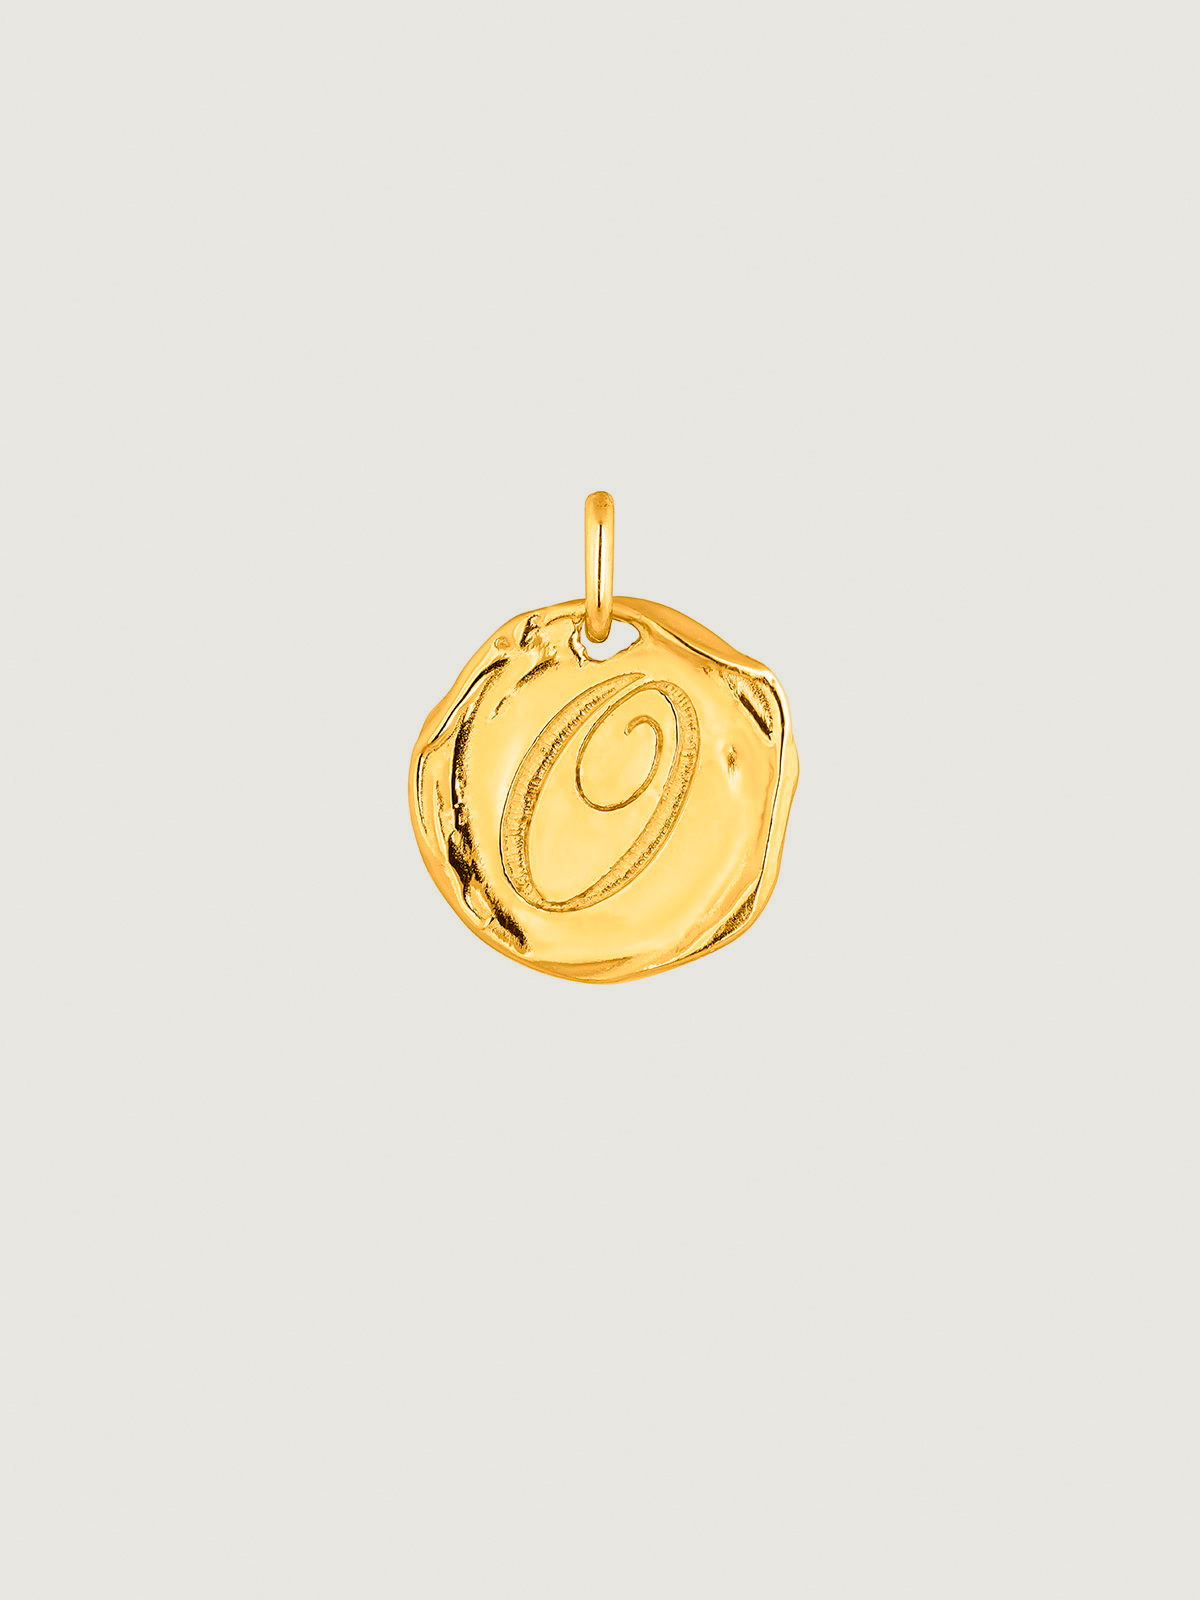 Charm artesanal de plata 925 bañada en oro amarillo de 18K con inicial O